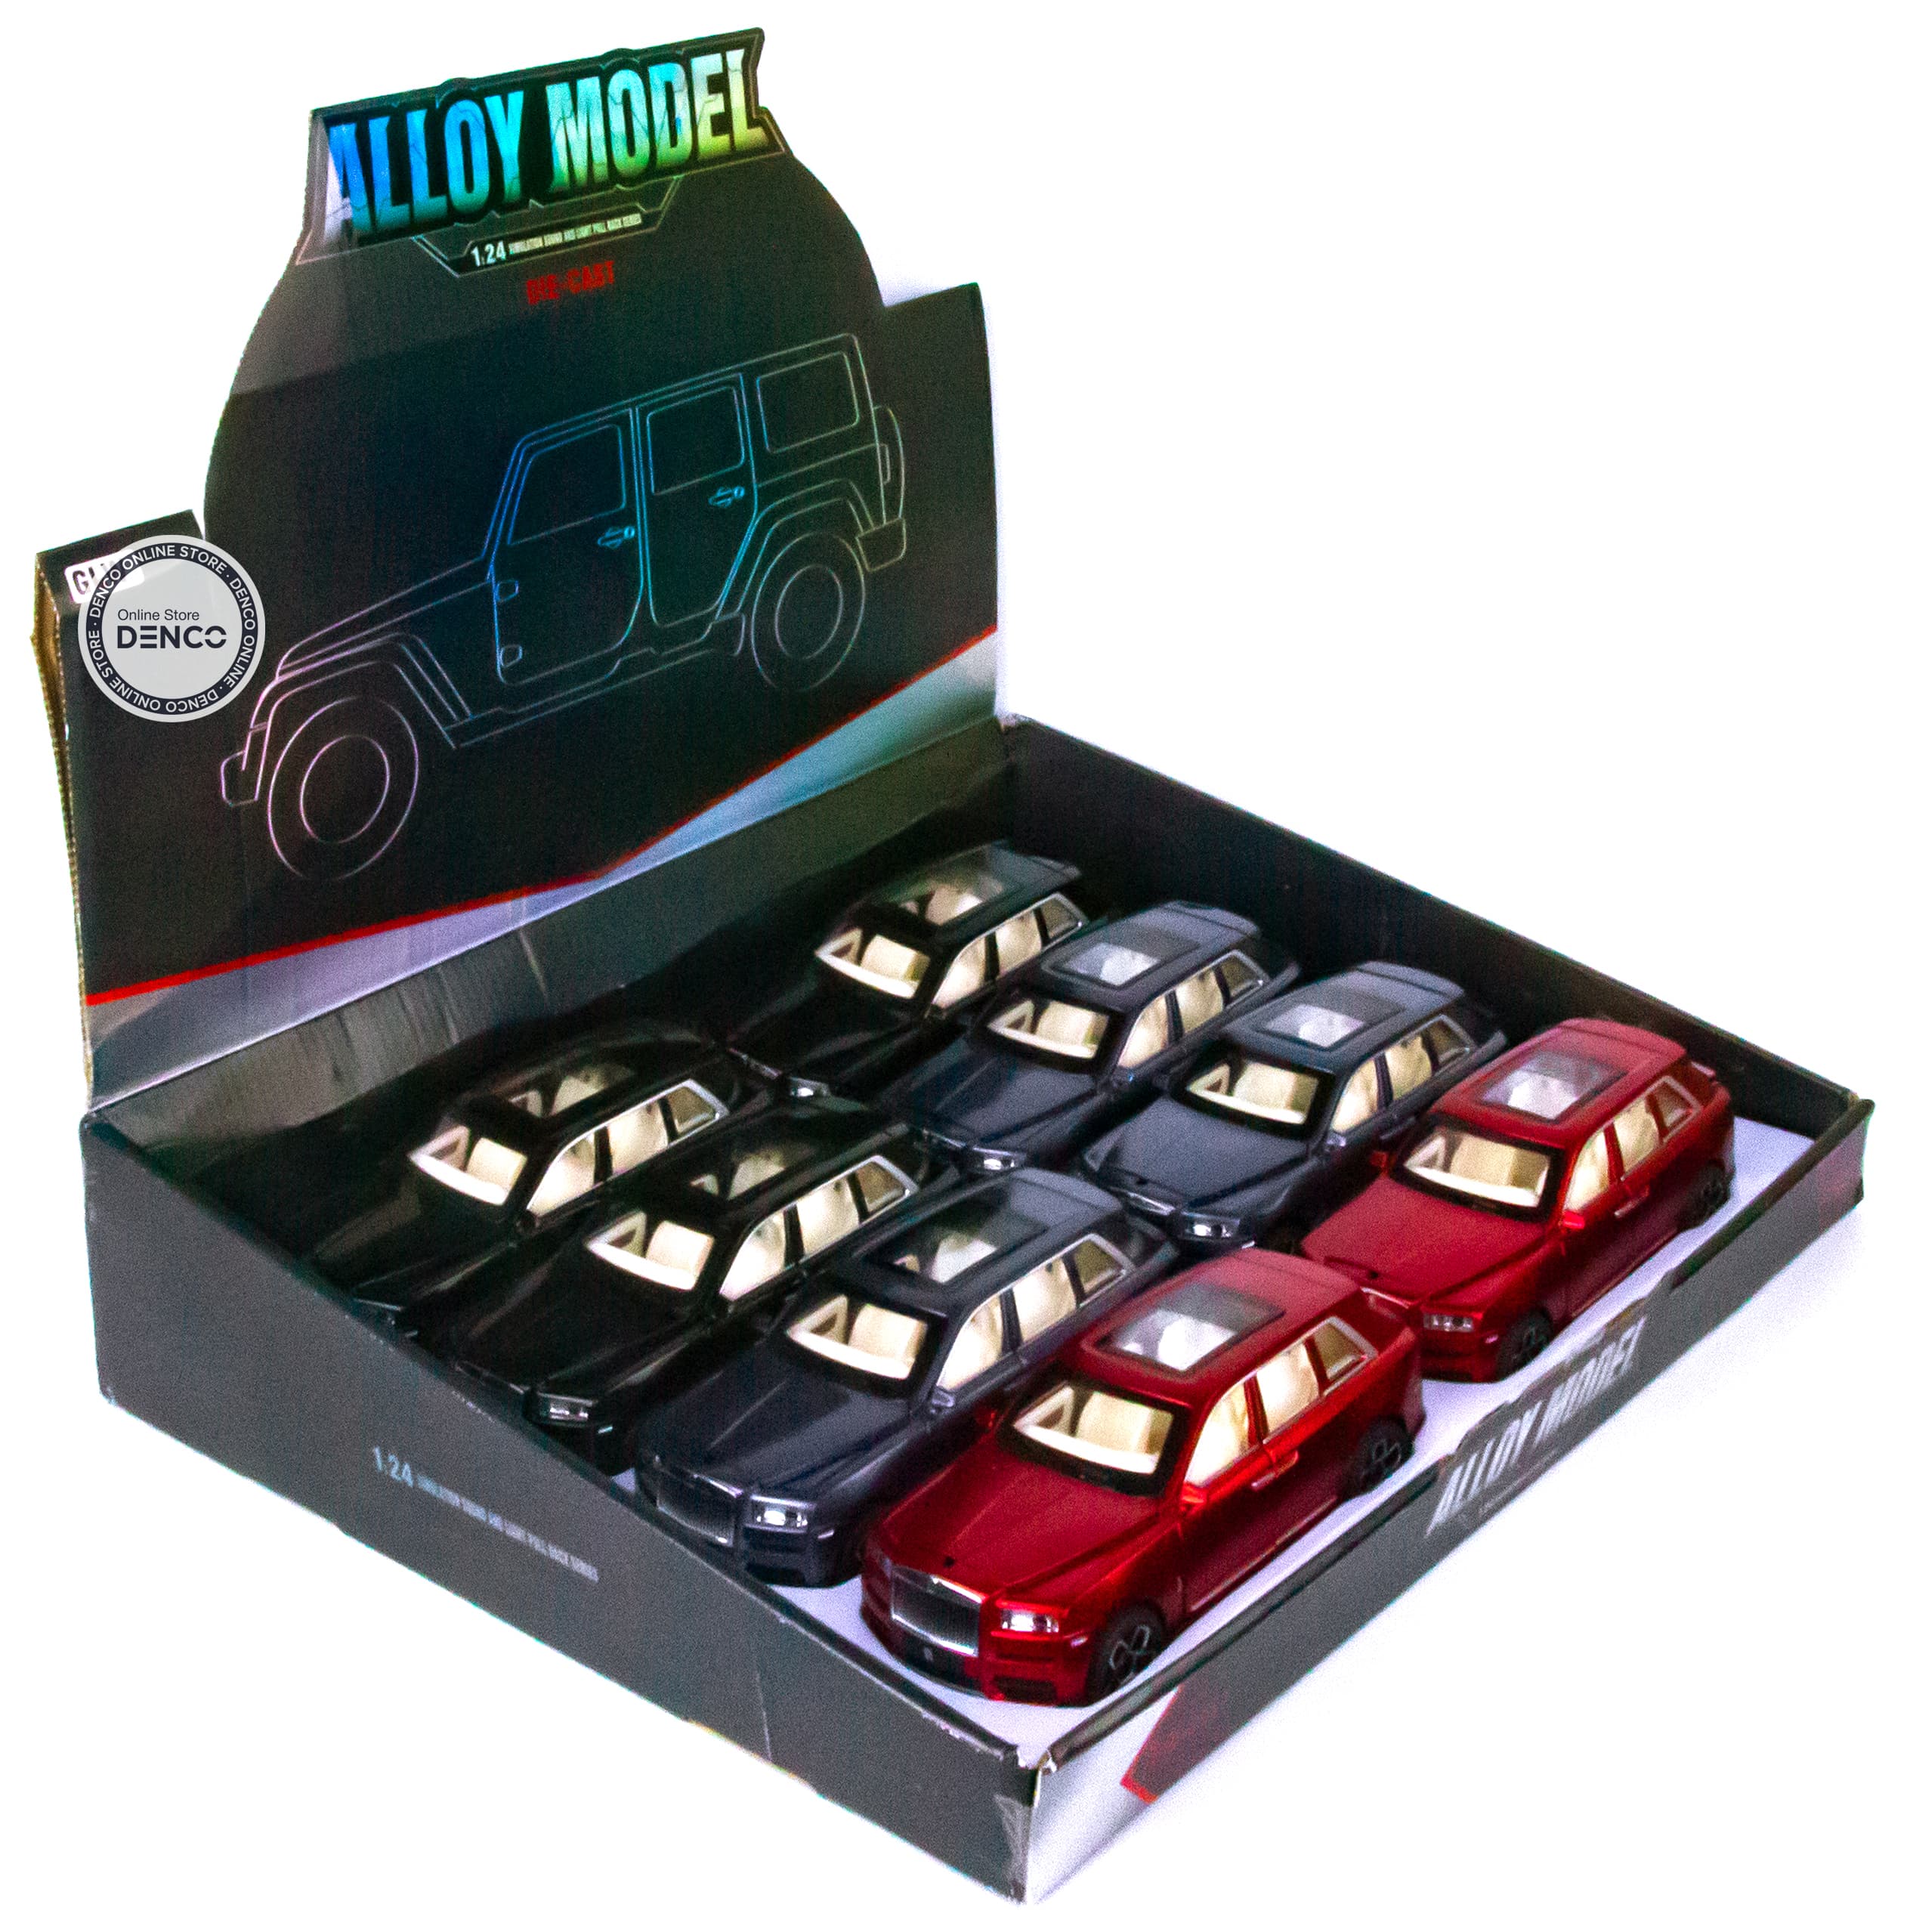 Металлическая машинка Alloy Model 1:24 «Rolls-Royce Cullinan» 21 см. 5506 инерционная, свет, звук / Синий